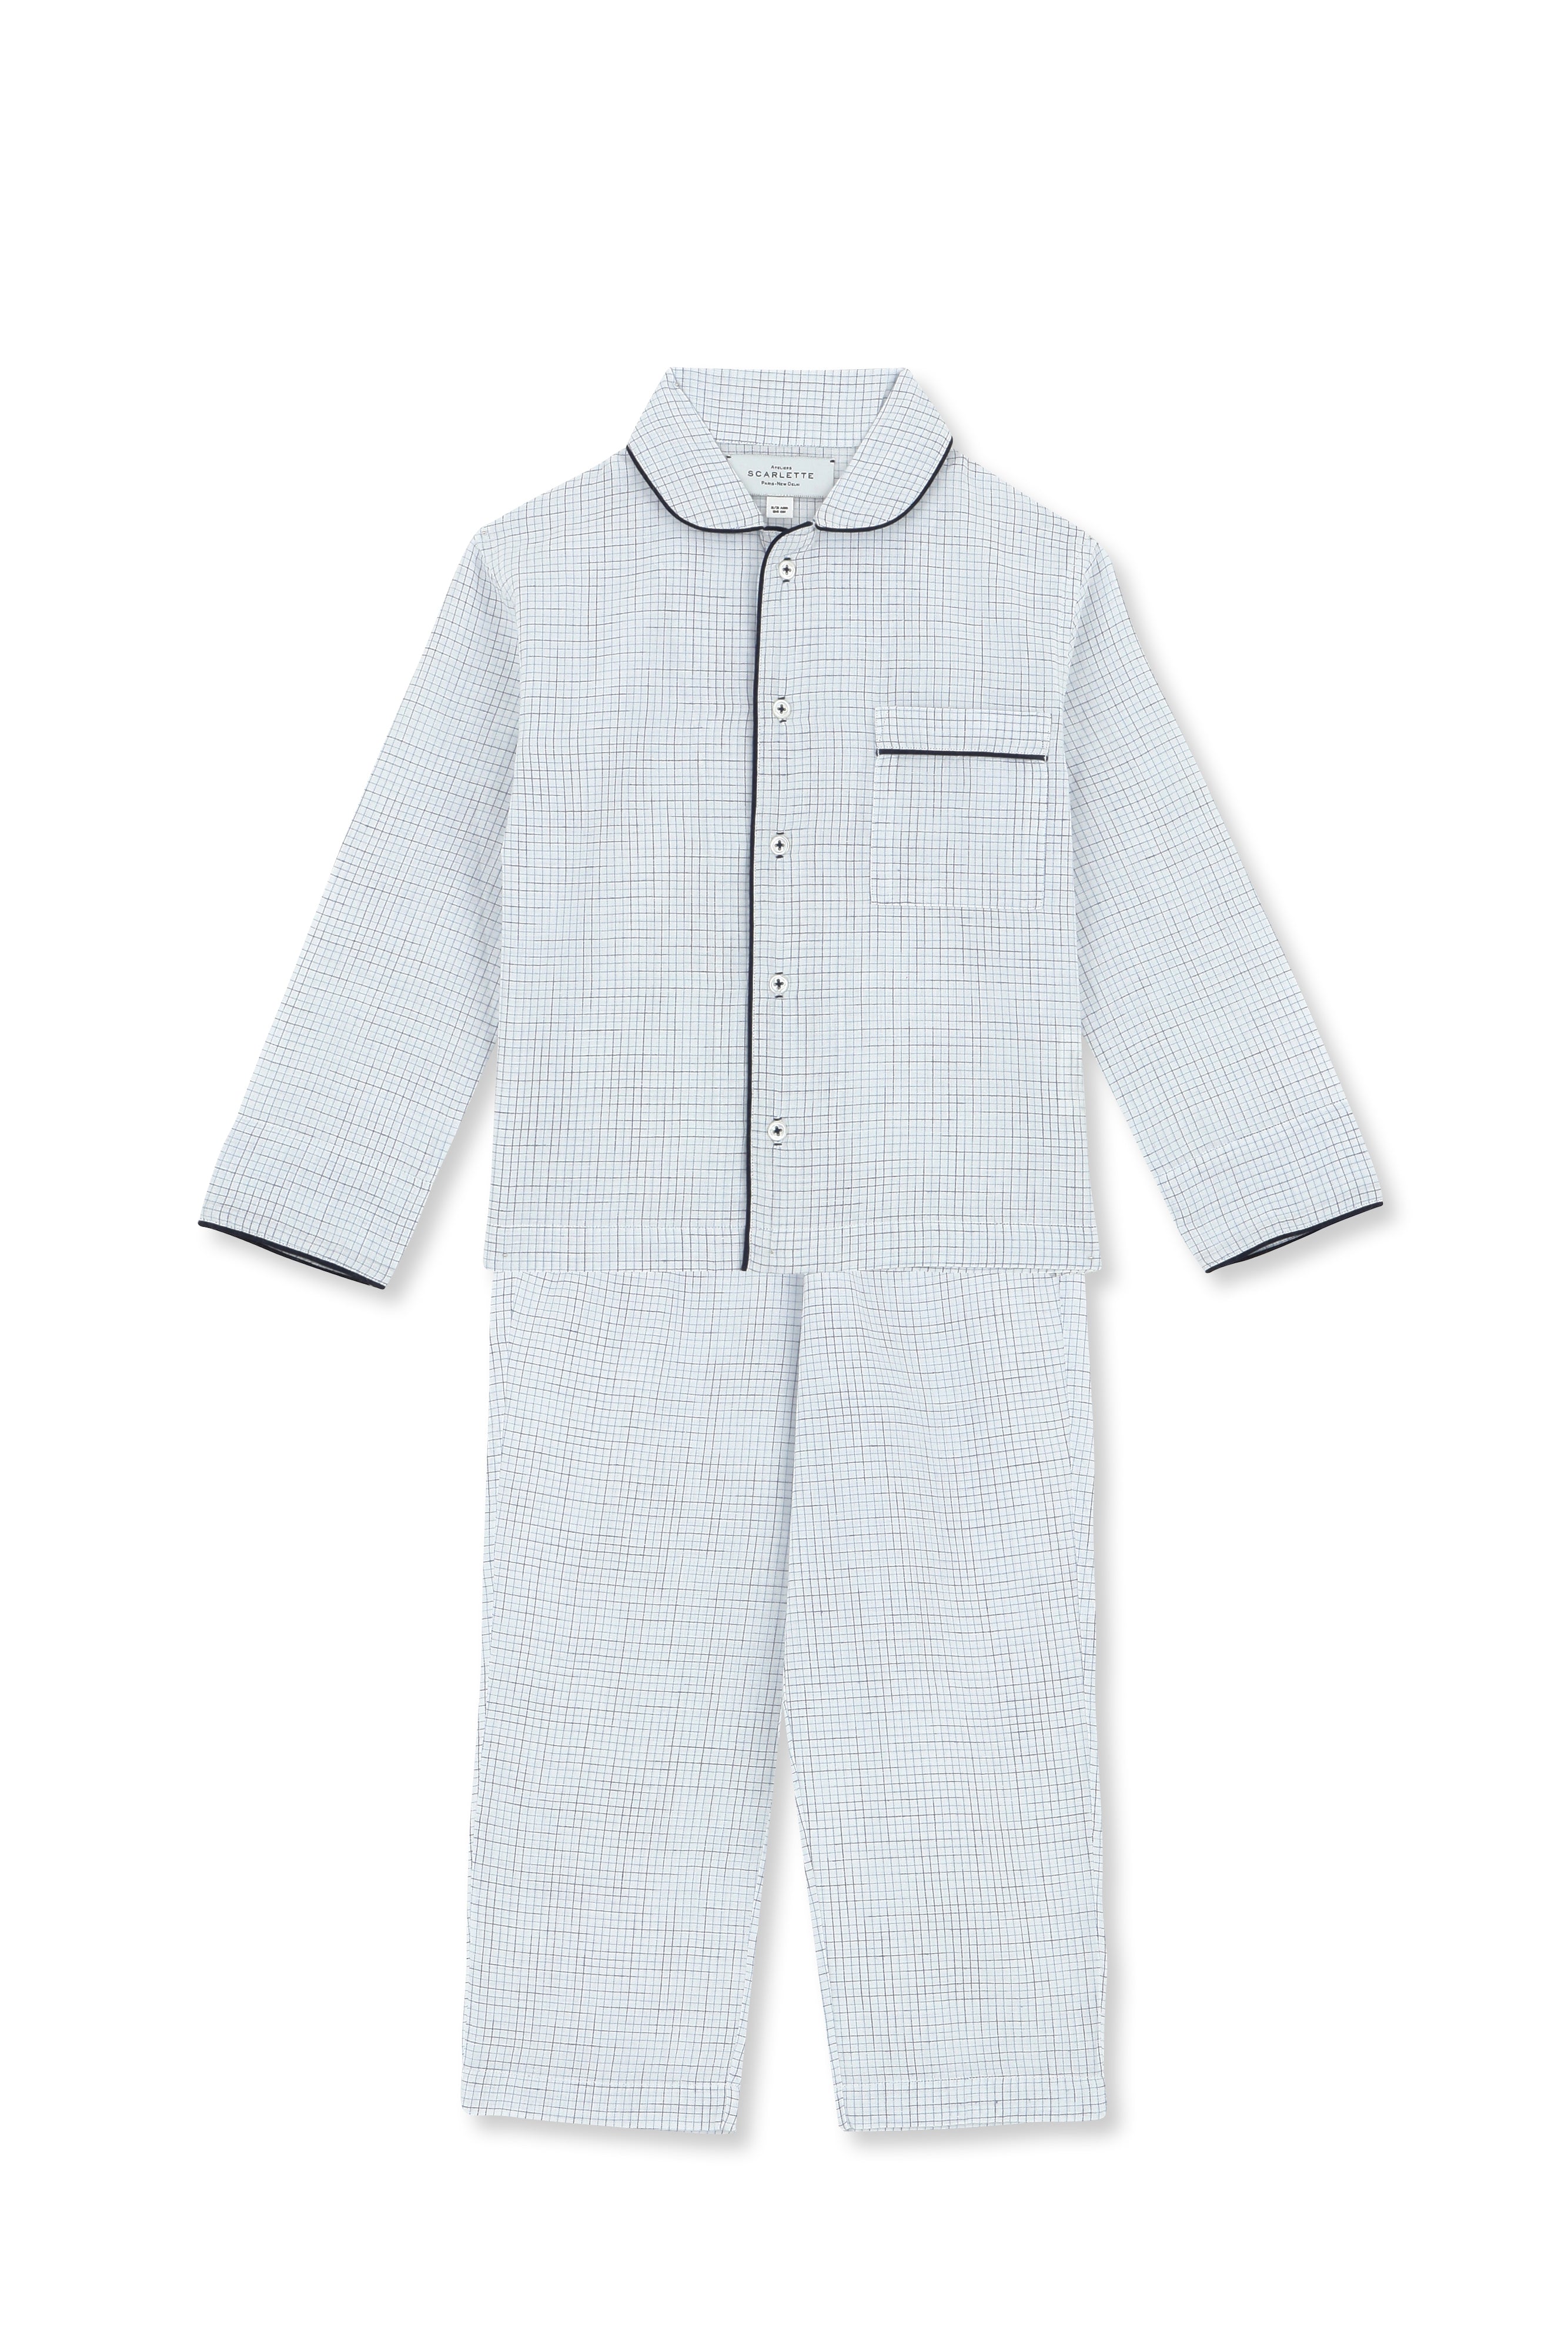 Pyjama Enfant Paul